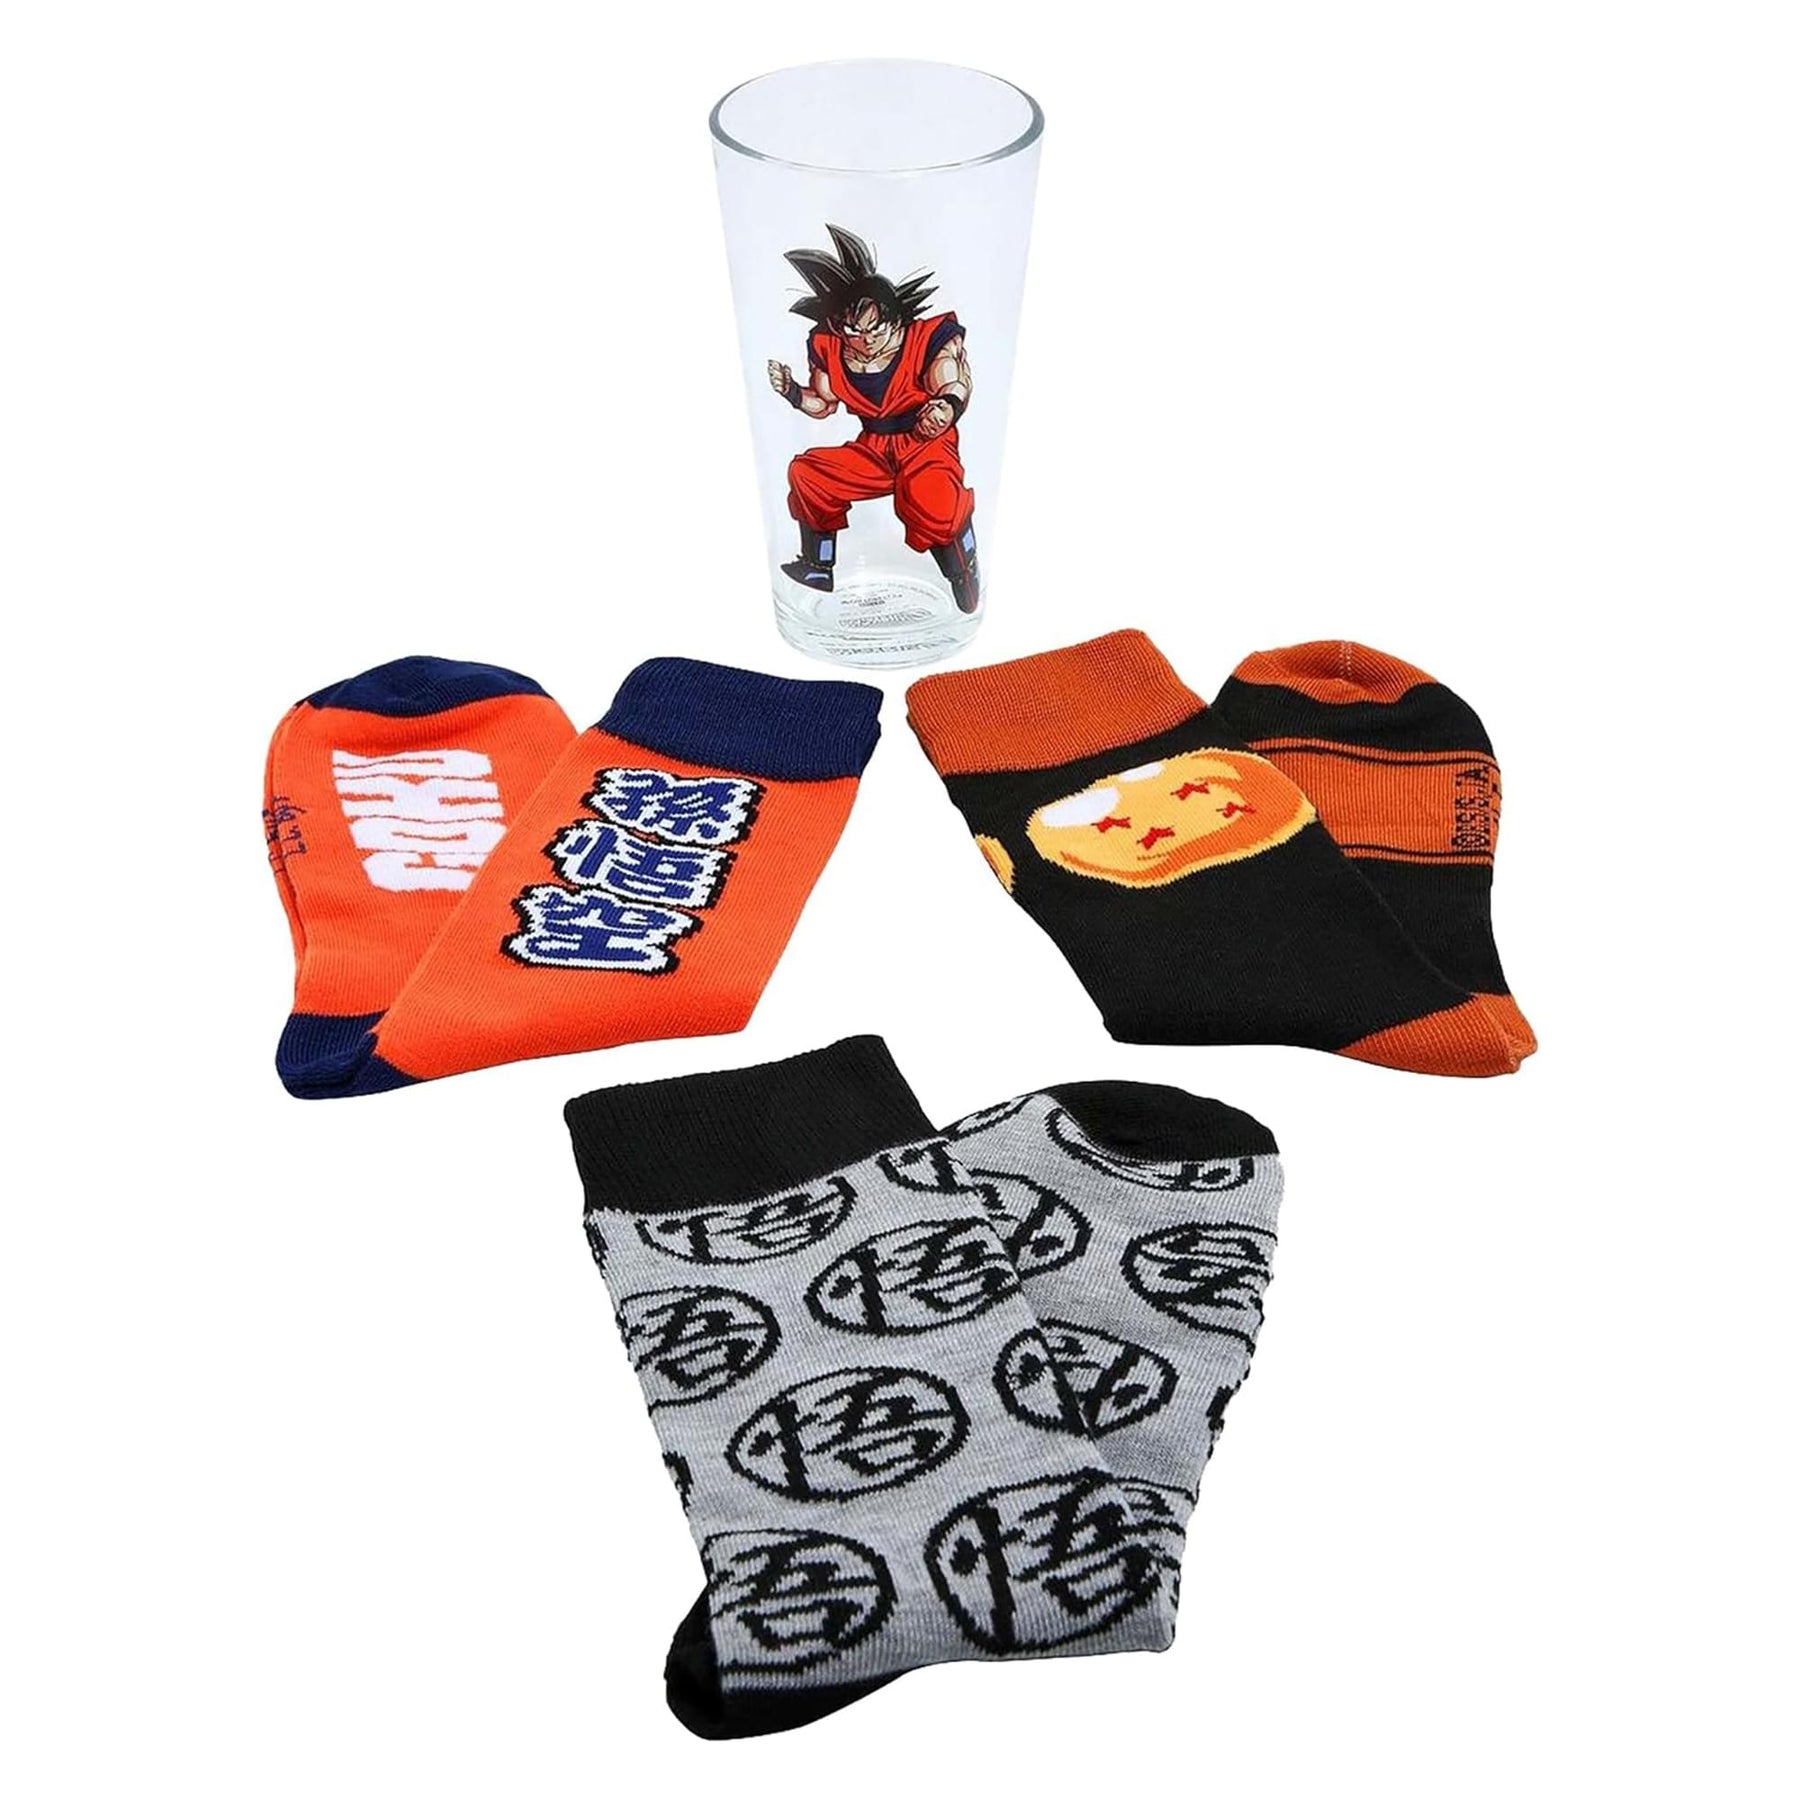 Dragon Ball Z Pint Glass and Sock Bundle